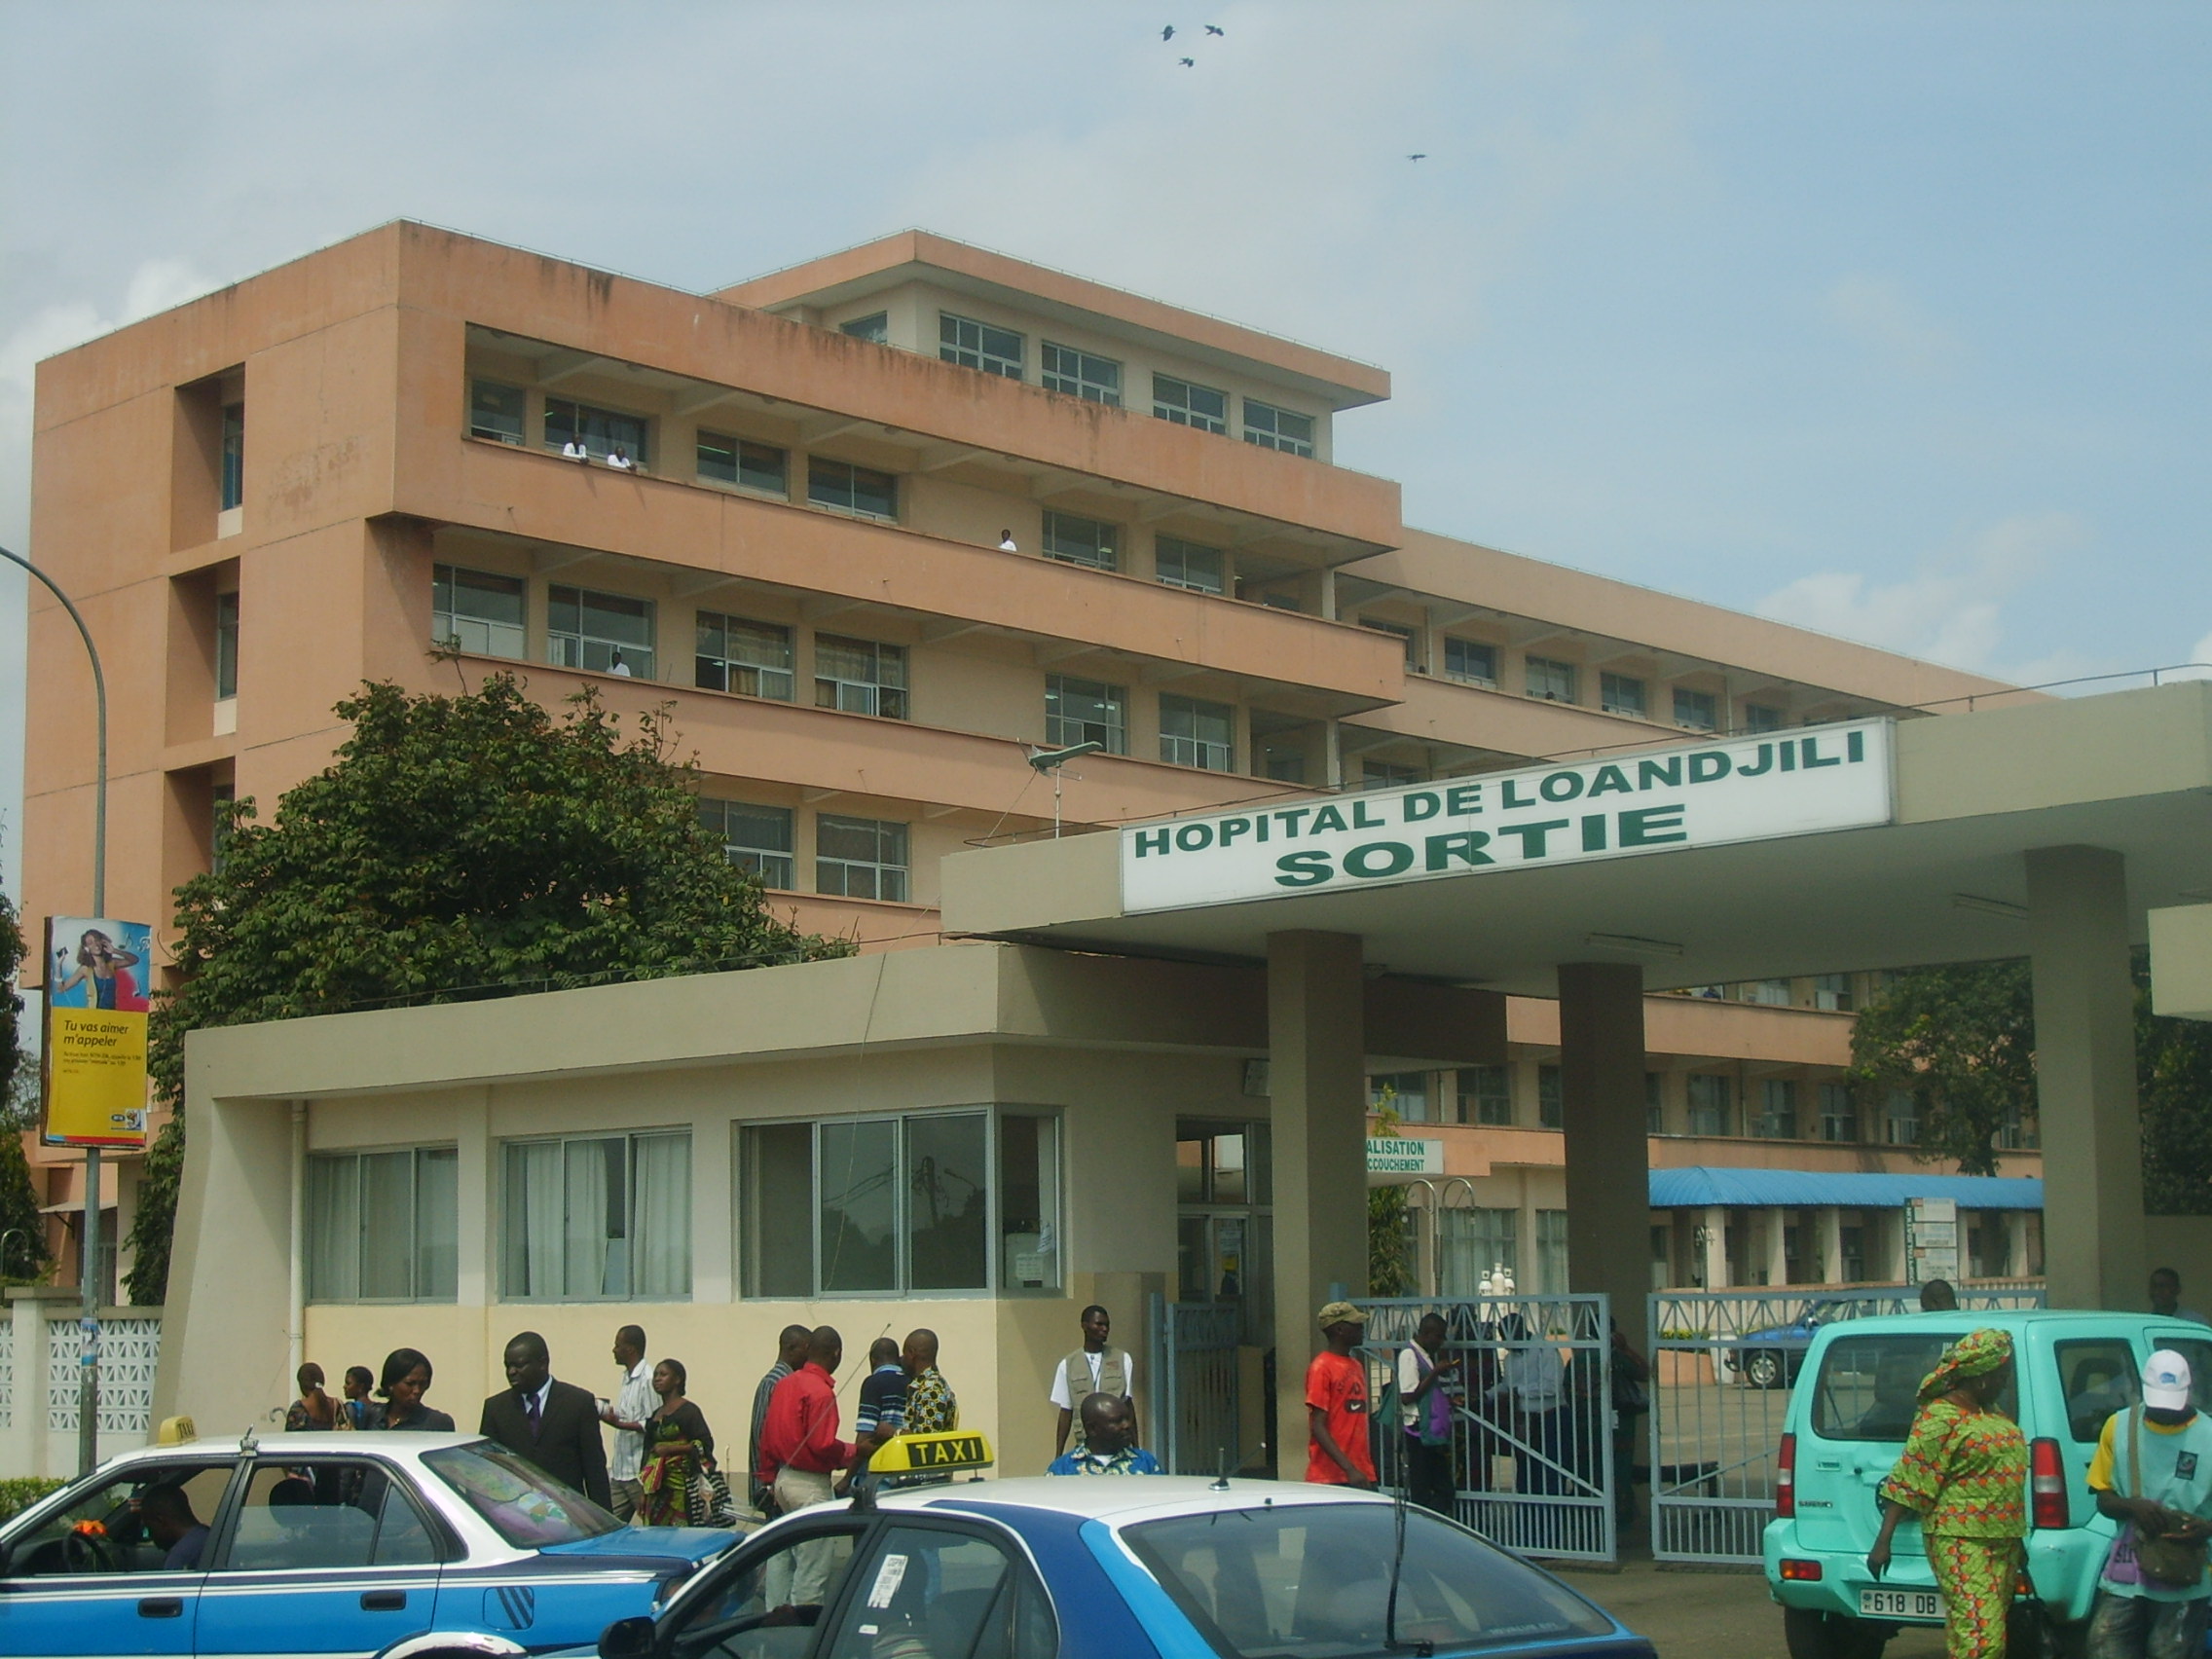 Congo-hôpital général de Loandjili : un échange autour du cancer